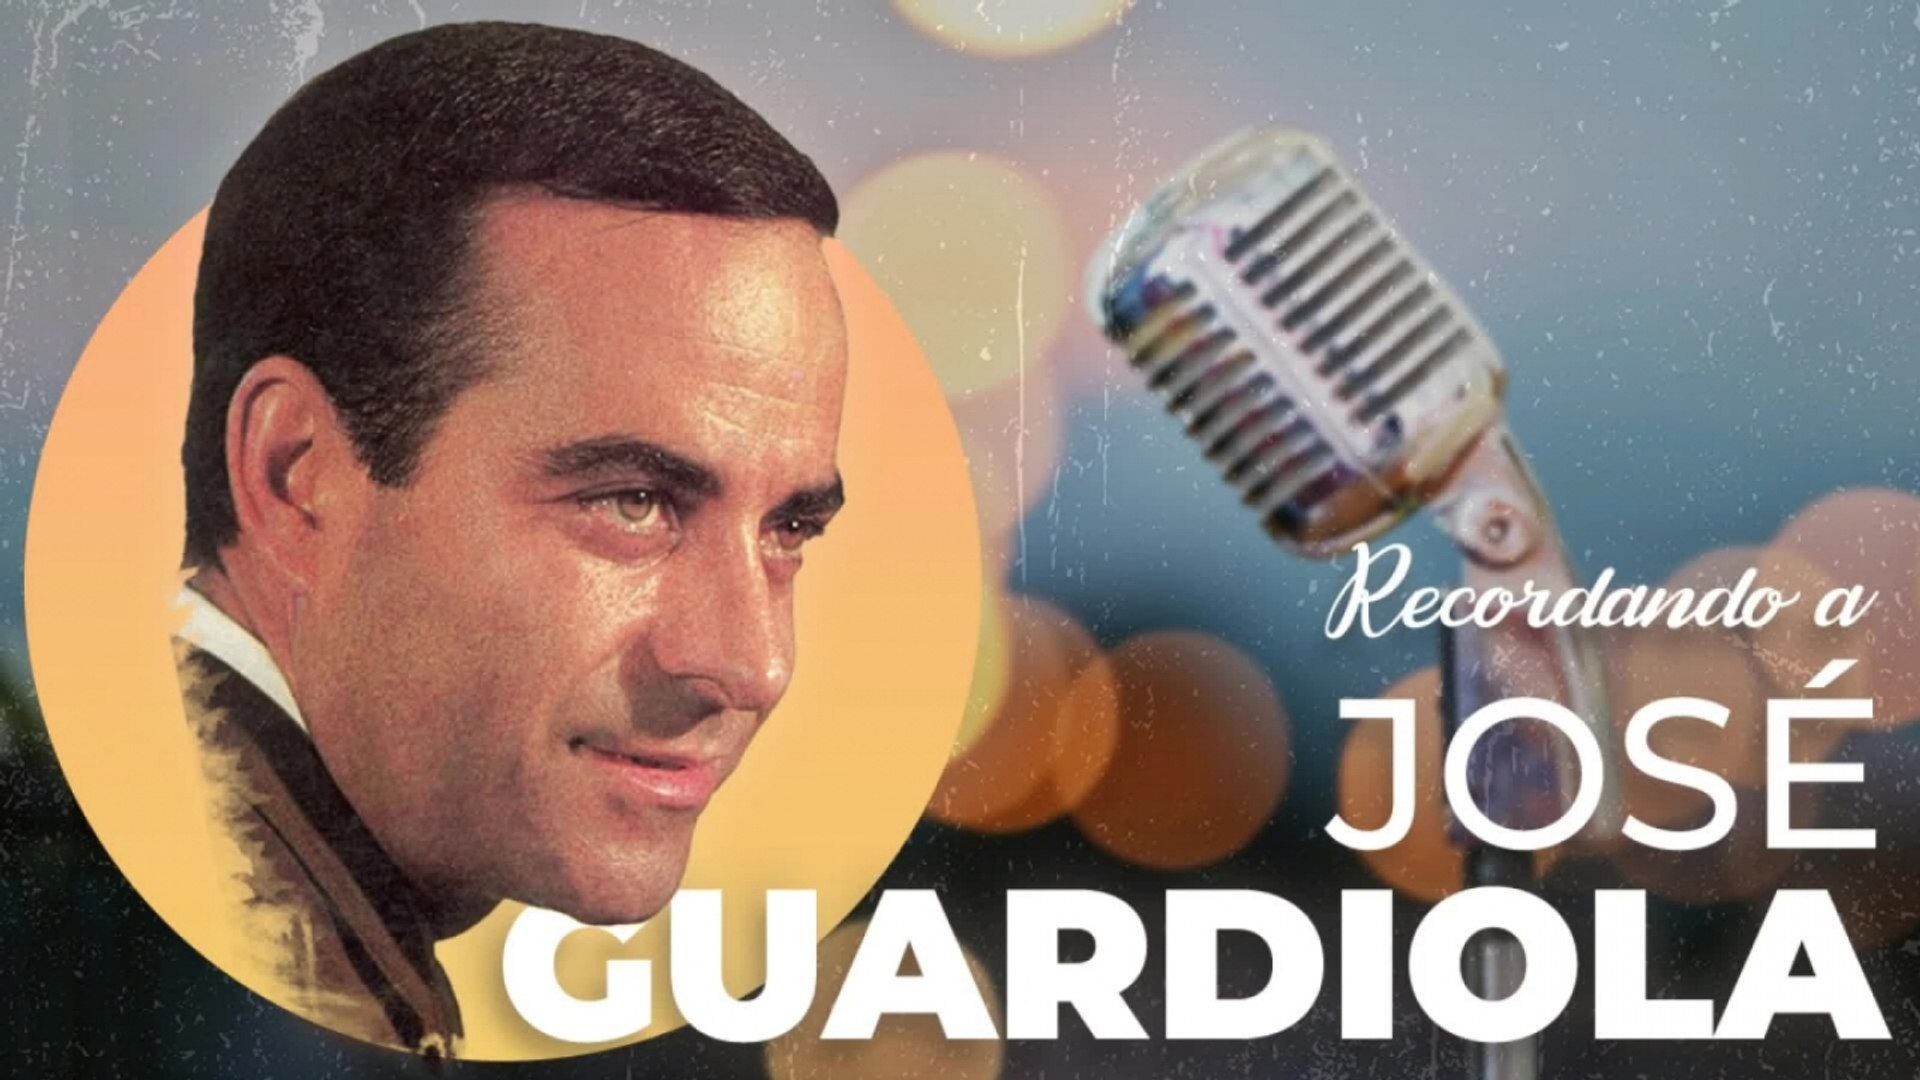 José Guardiola - Recordando a... José Guardiola - Vídeo Dailymotion